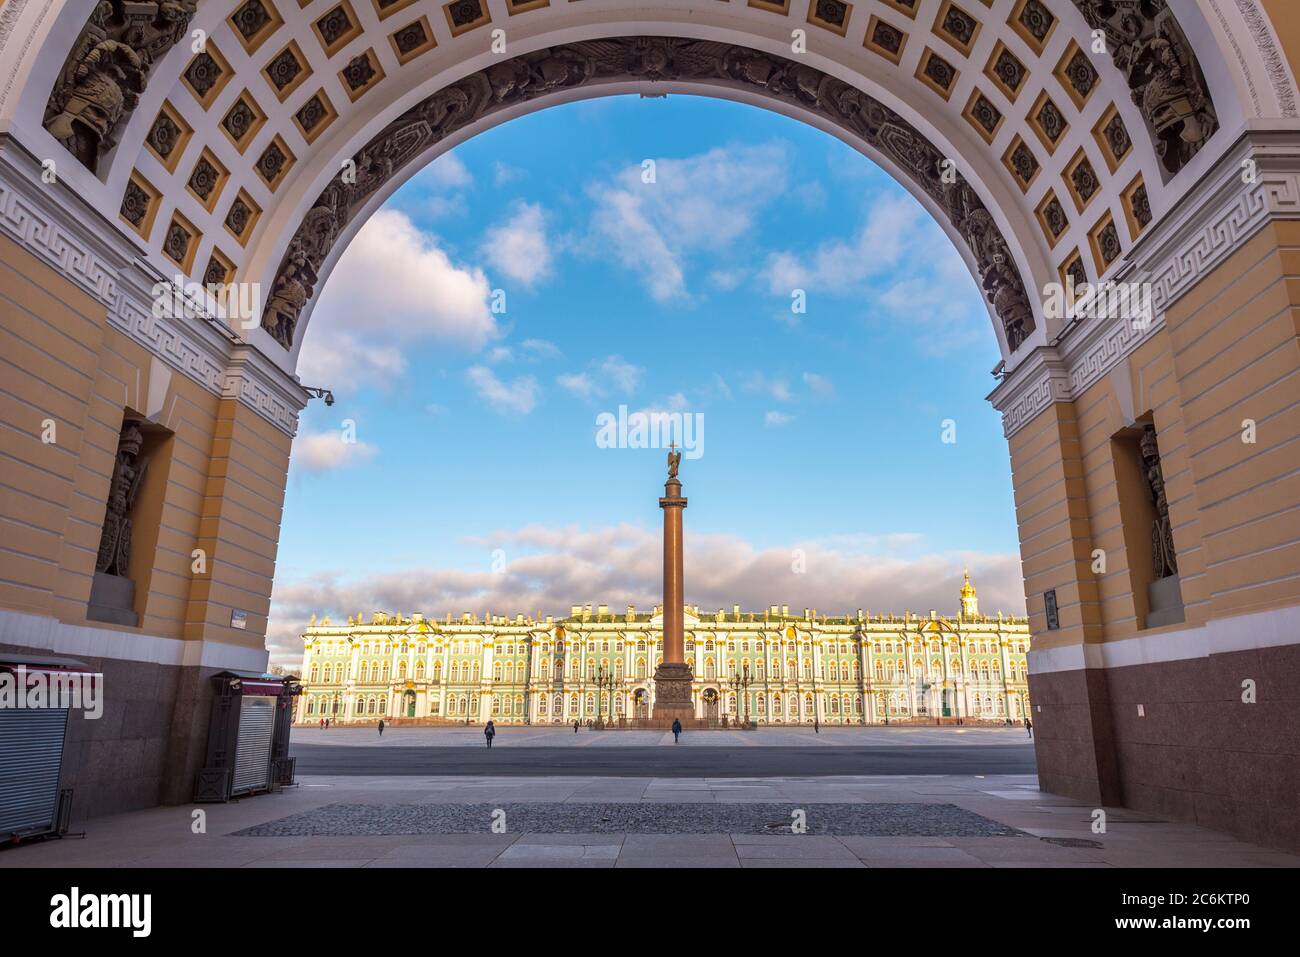 San Petersburgo, Rusia. Plaza del Palacio y Palacio de Invierno (el Hermitage) a través del Arco del Triunfo del edificio del personal General. Foto de stock